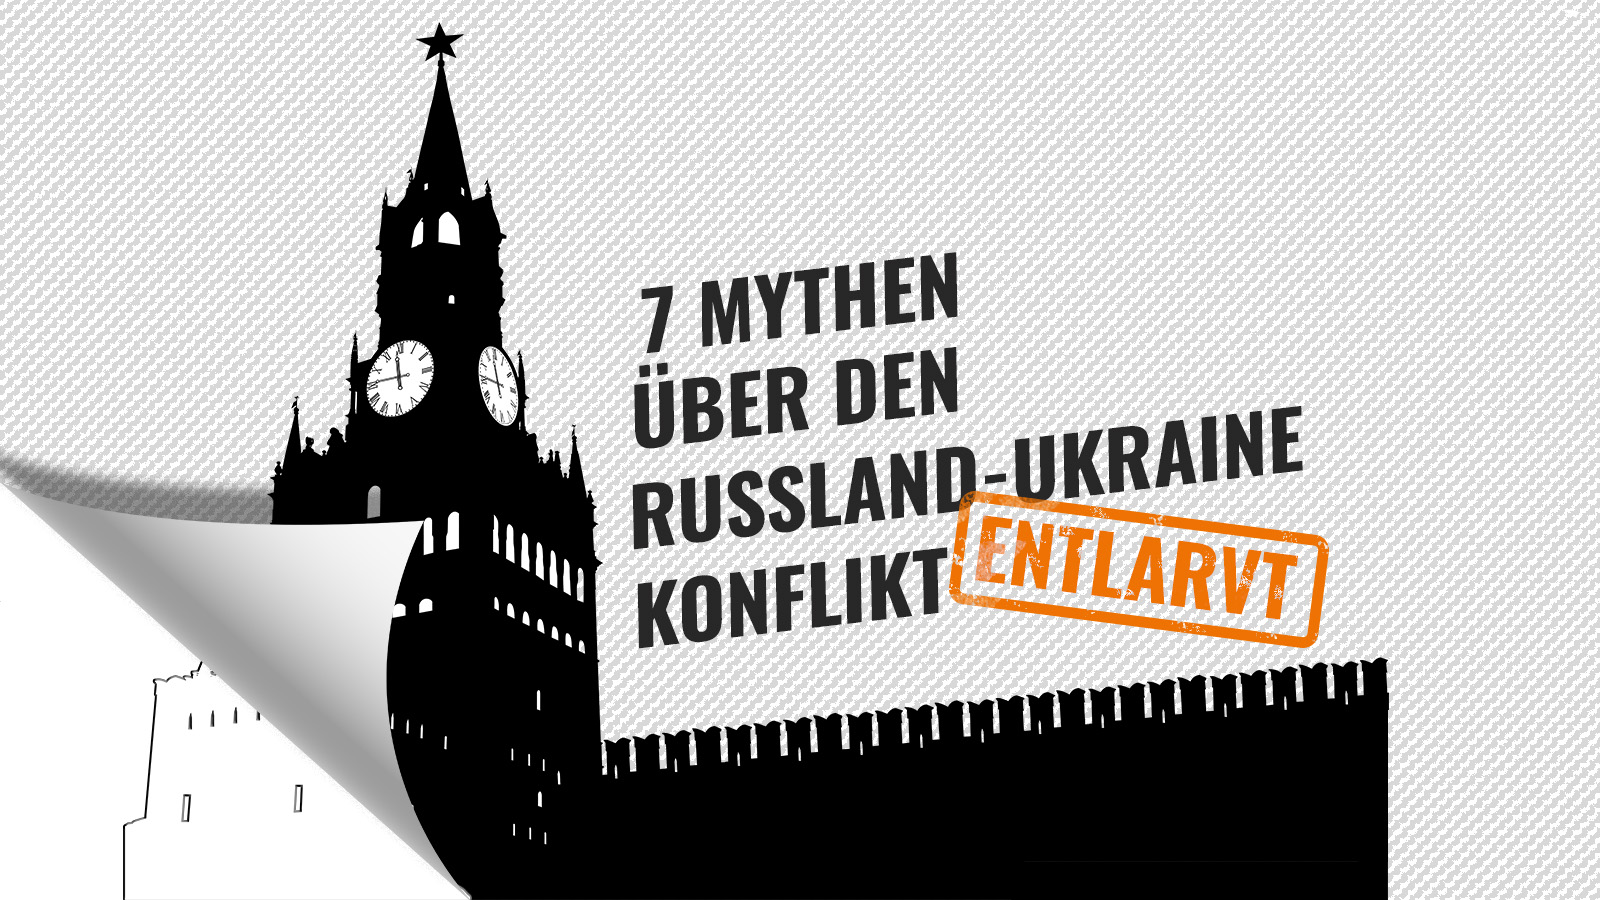 7 MYTHEN ÜBER DEN RUSSLAND-UKRAINE-KONFLIKT ENTLARVT